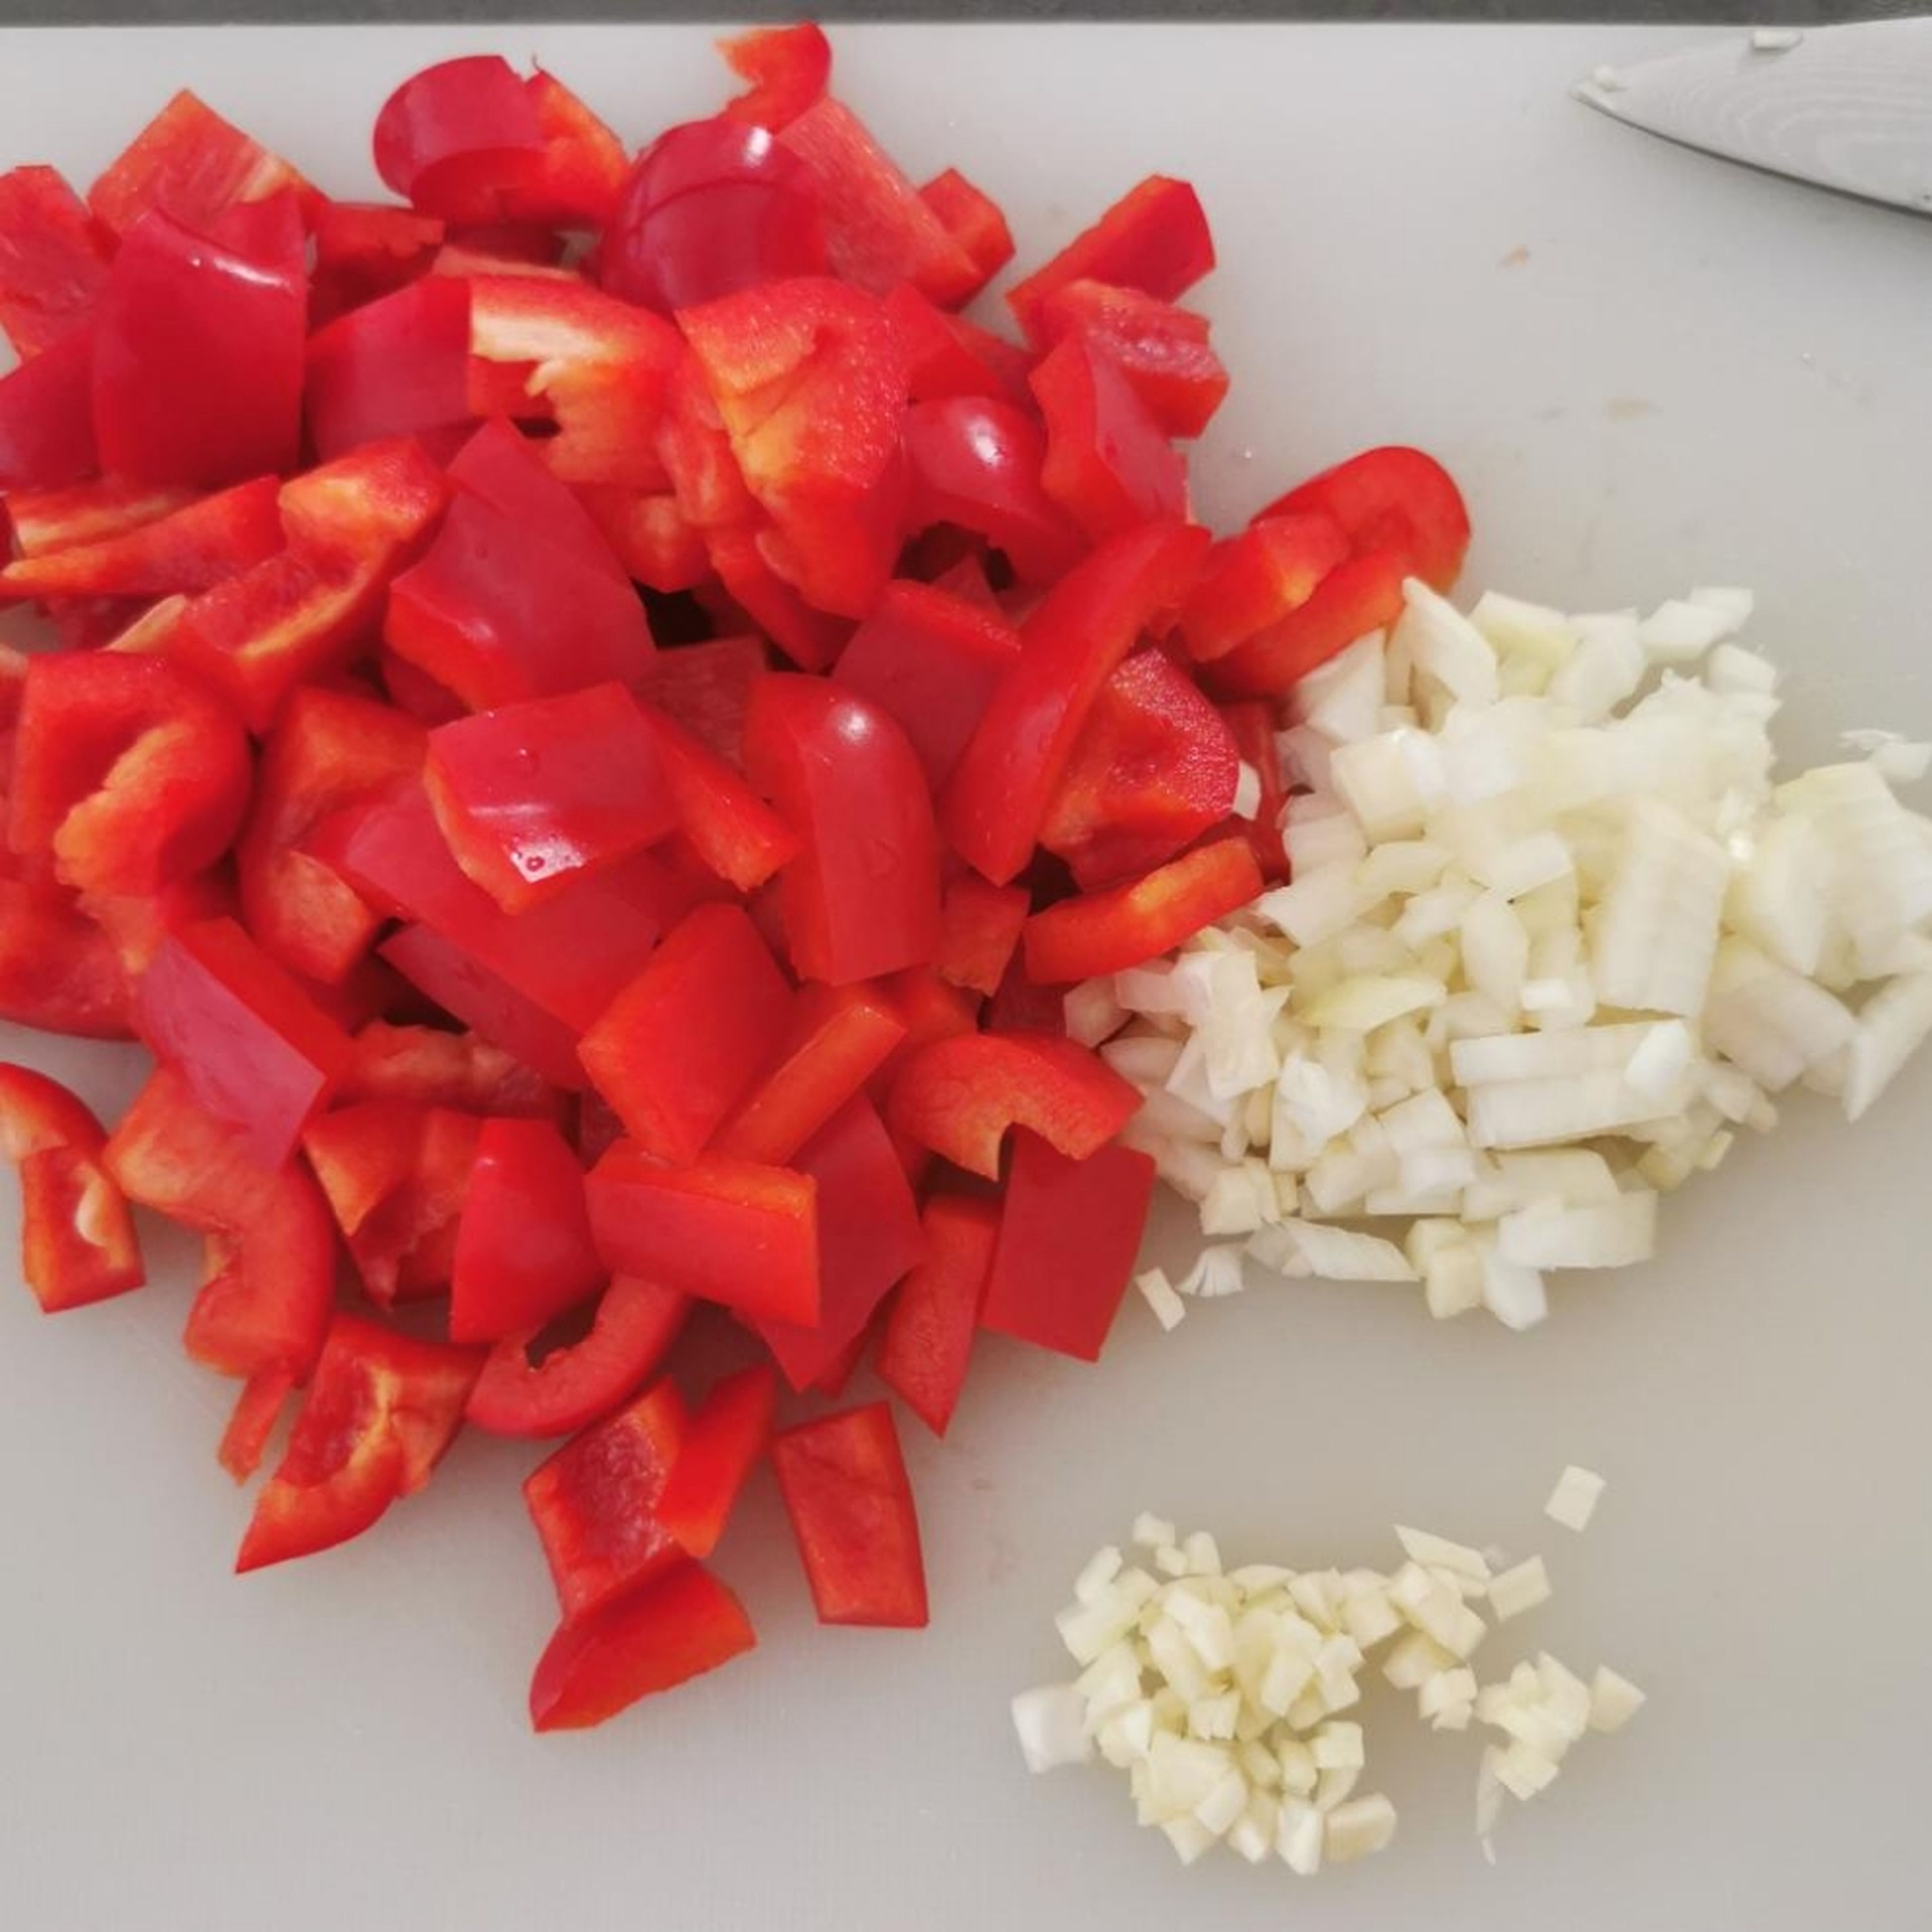 Zwiebel, Knoblauch und restliche Paprika klein schneiden.